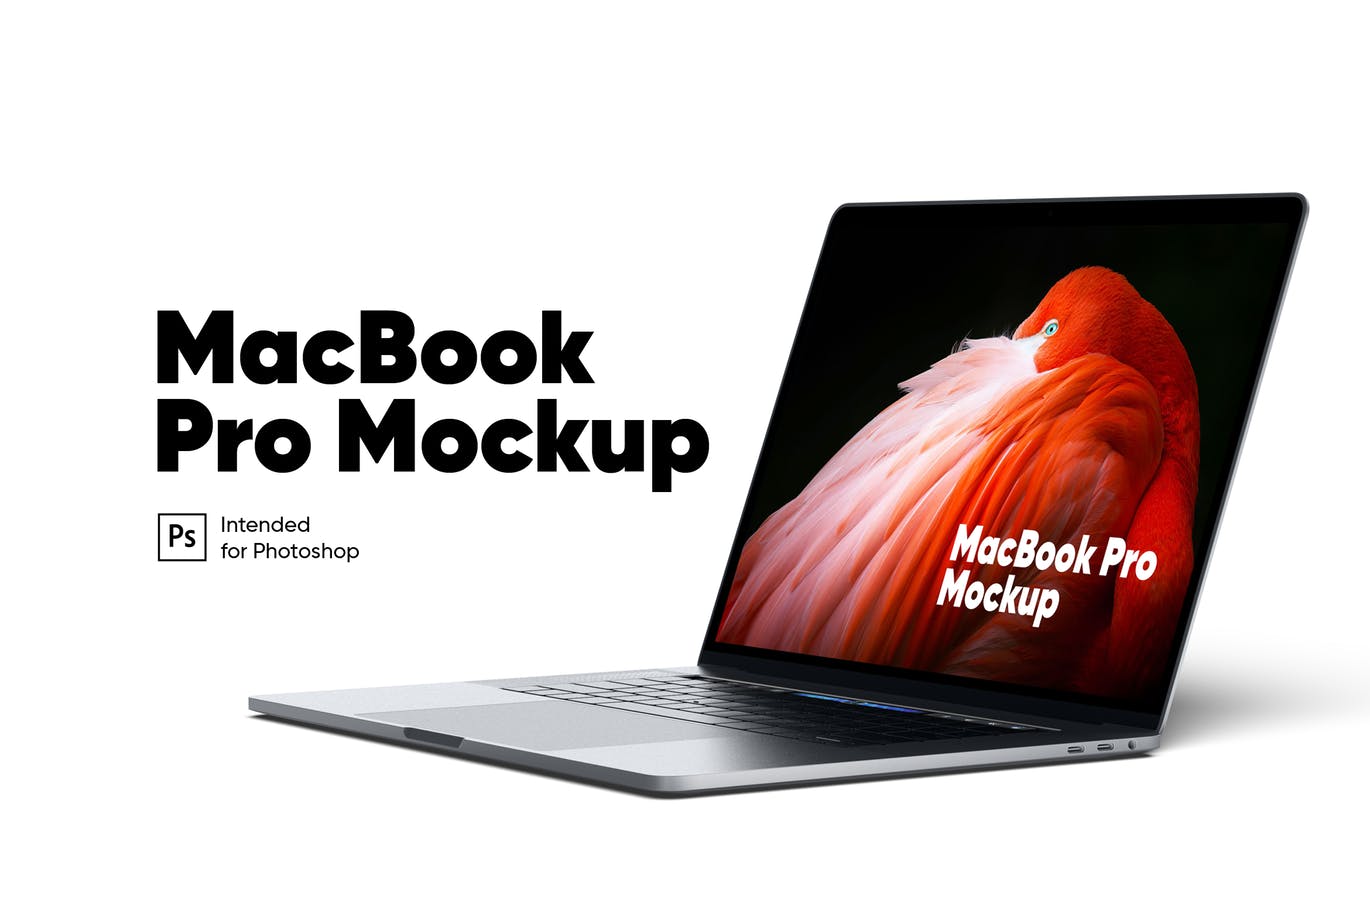 MacBook Pro笔记本电脑视网膜屏演示第一素材精选样机 MacBook Pro Mockup插图